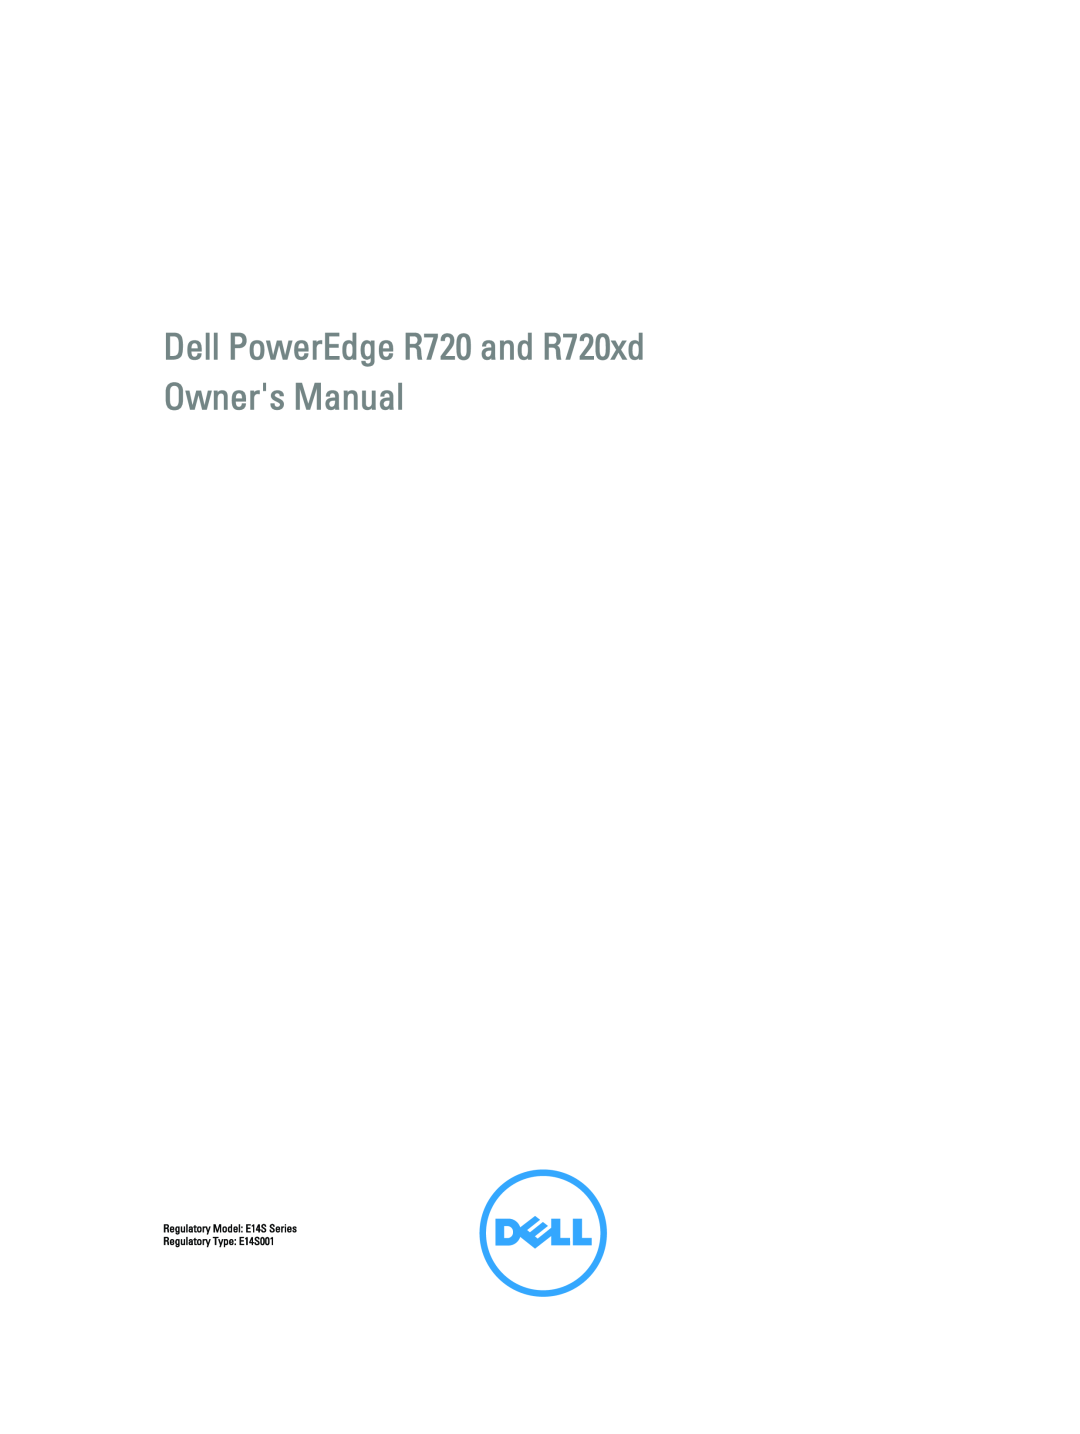 Dell R720XD manual Regulatory Model E14S Series, Regulatory Type E14S001 